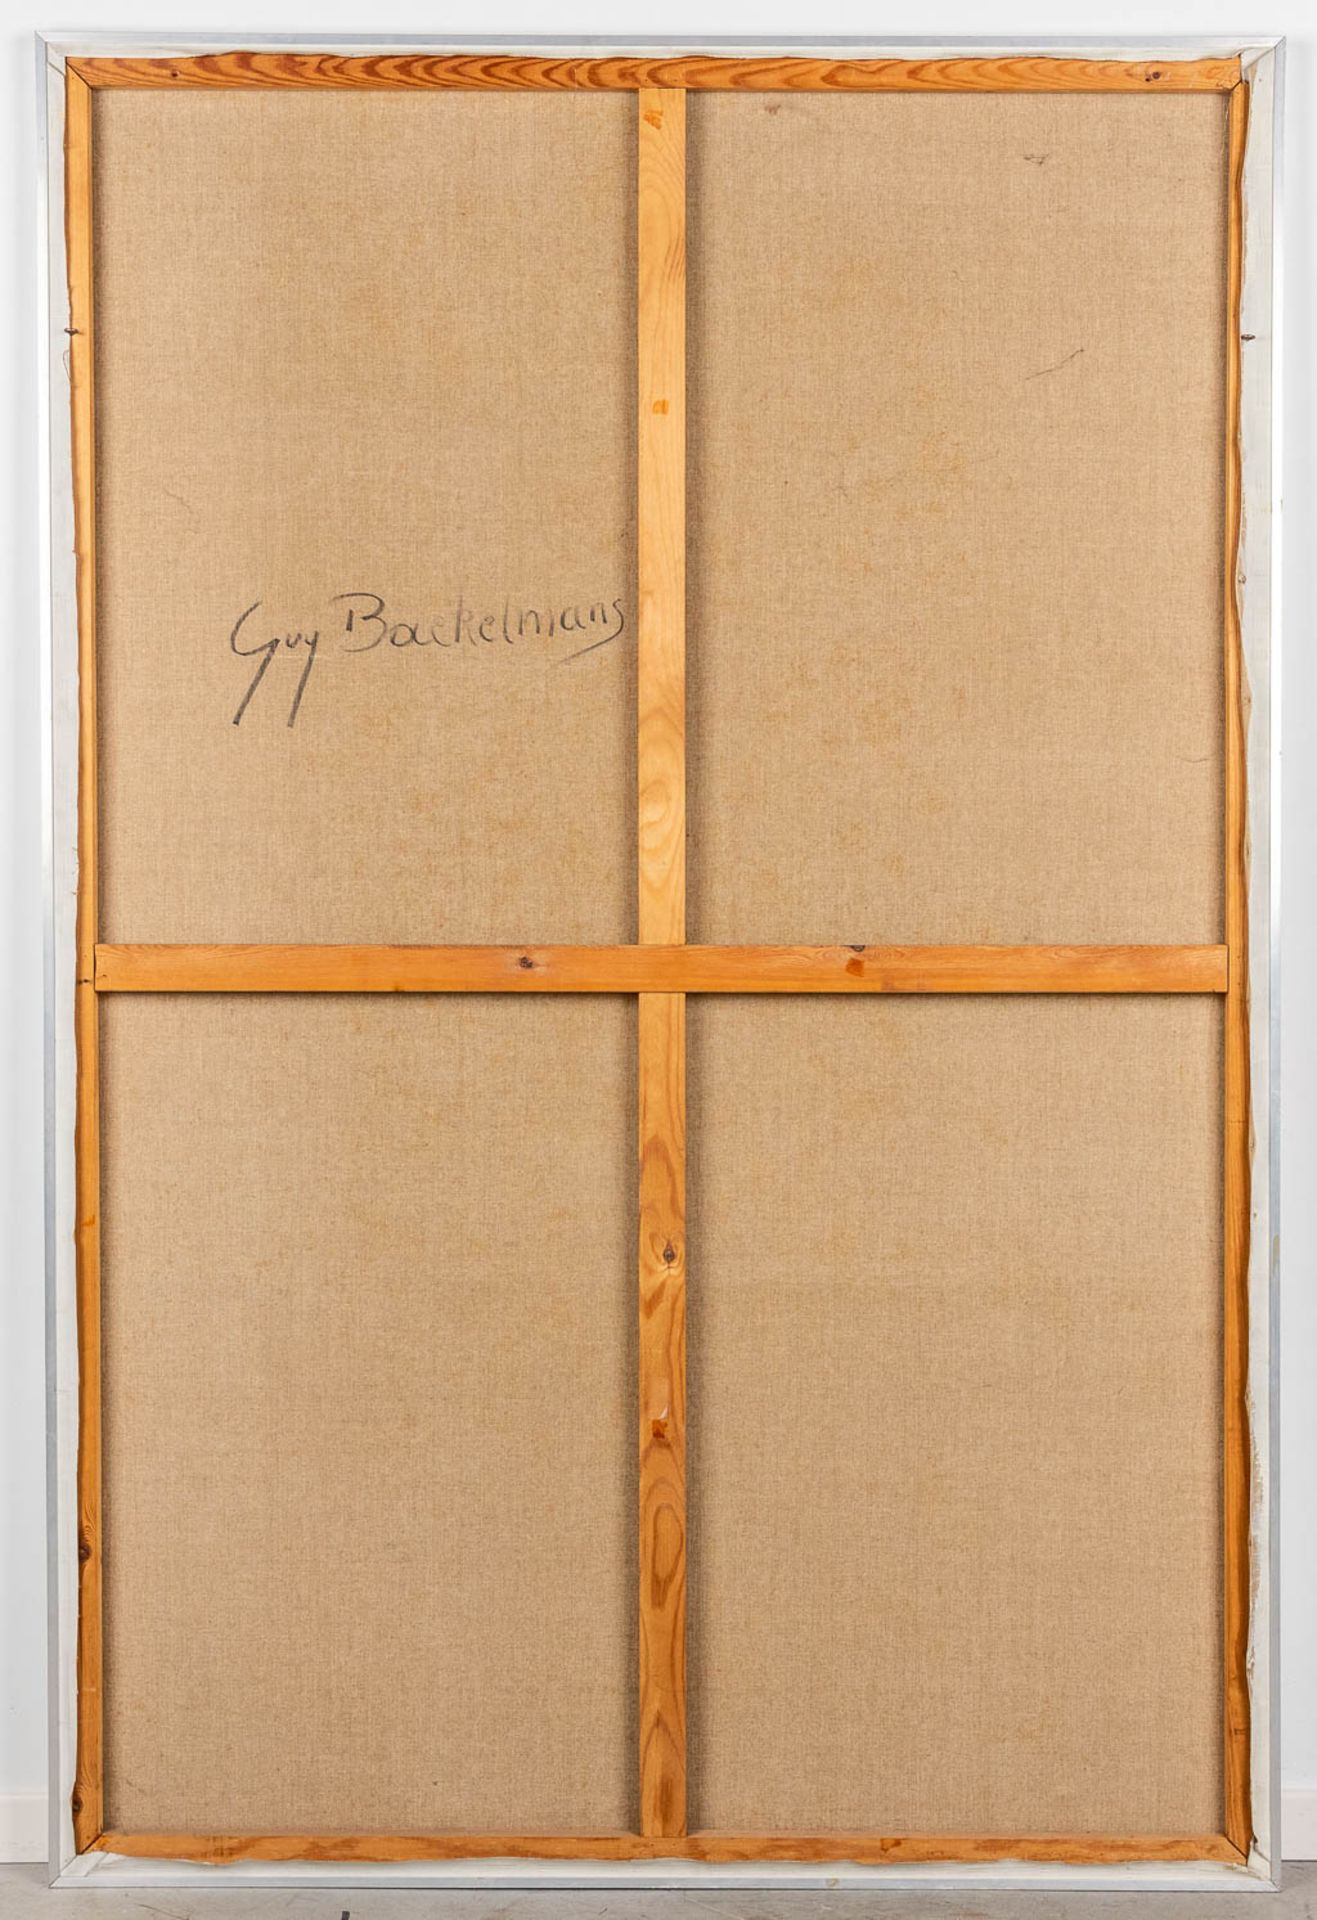 Guy BAEKELMANS (1940) 'Divided' Tempera on canvas, 1969. (W:120 x H:180 cm) - Bild 8 aus 8